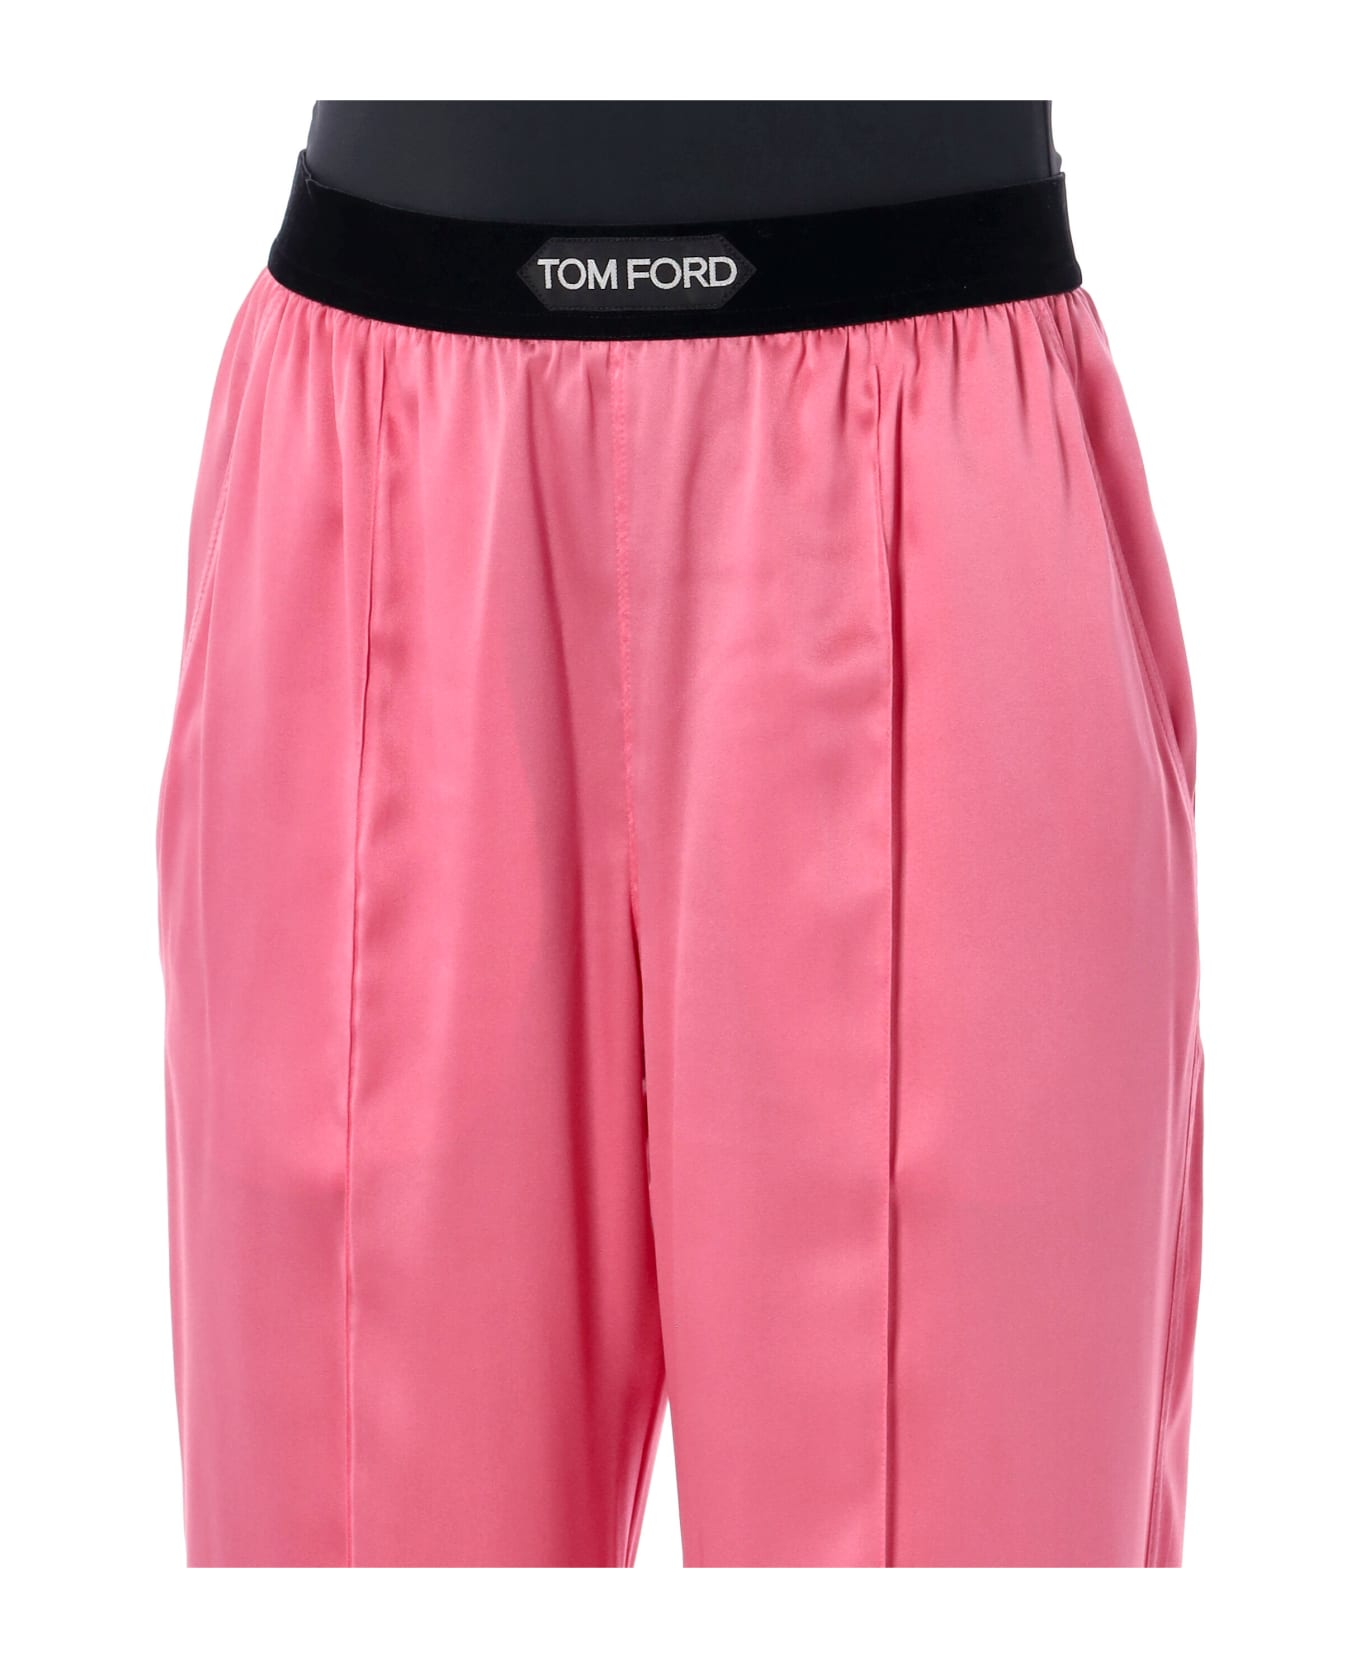 Tom Ford Silk Satin Pijama Pant - PINK ROSE